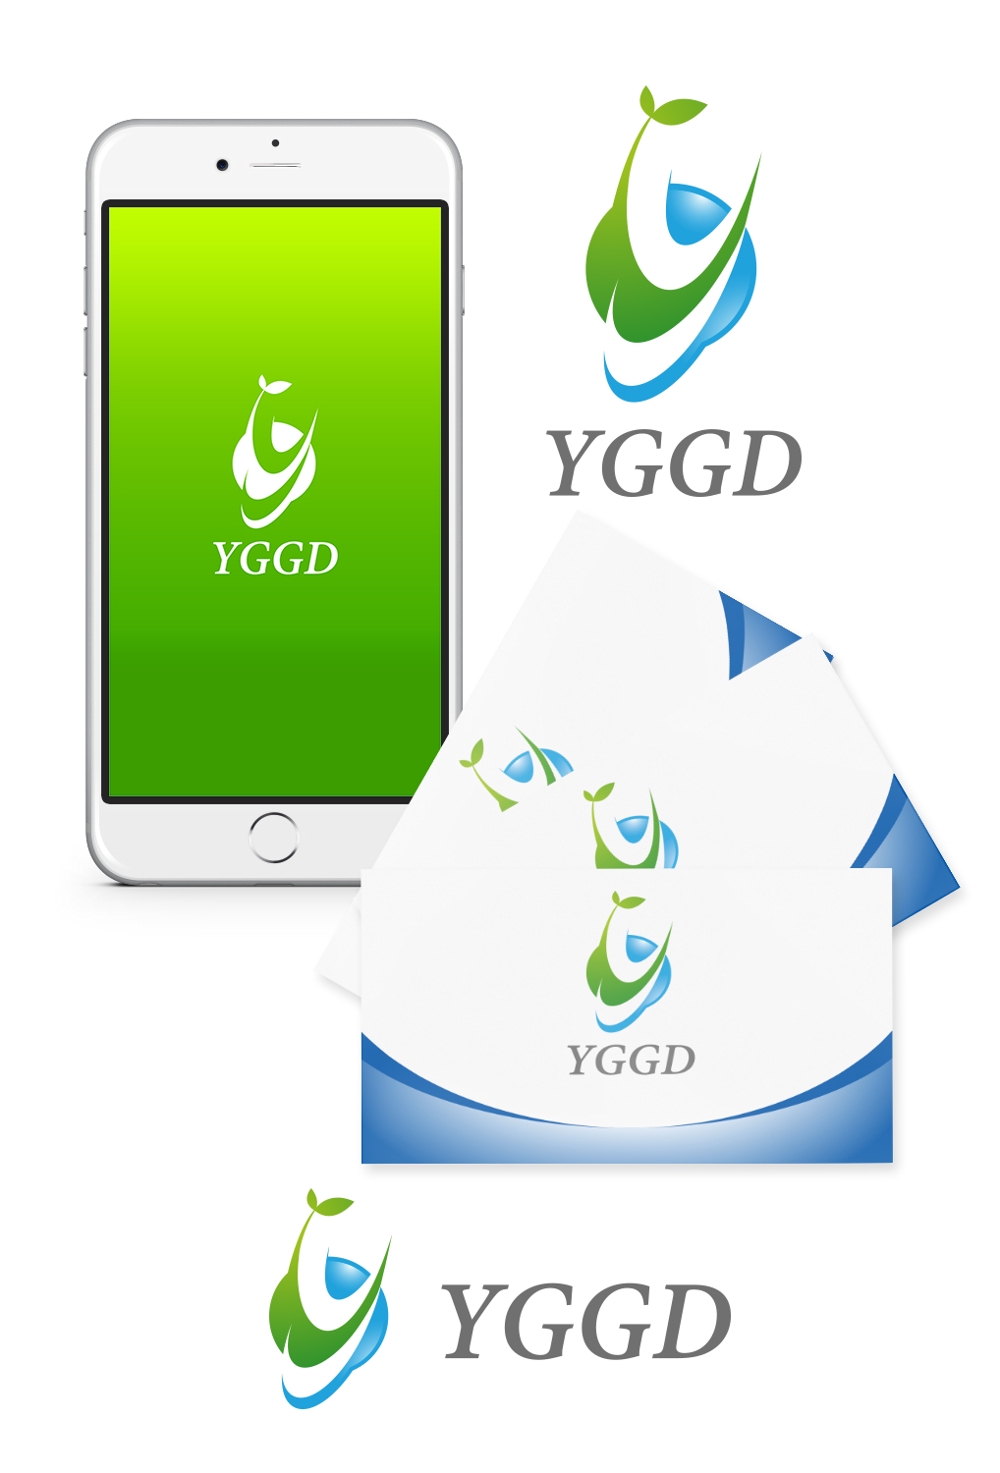 コンサルティングサービス「YGGD」ロゴ募集